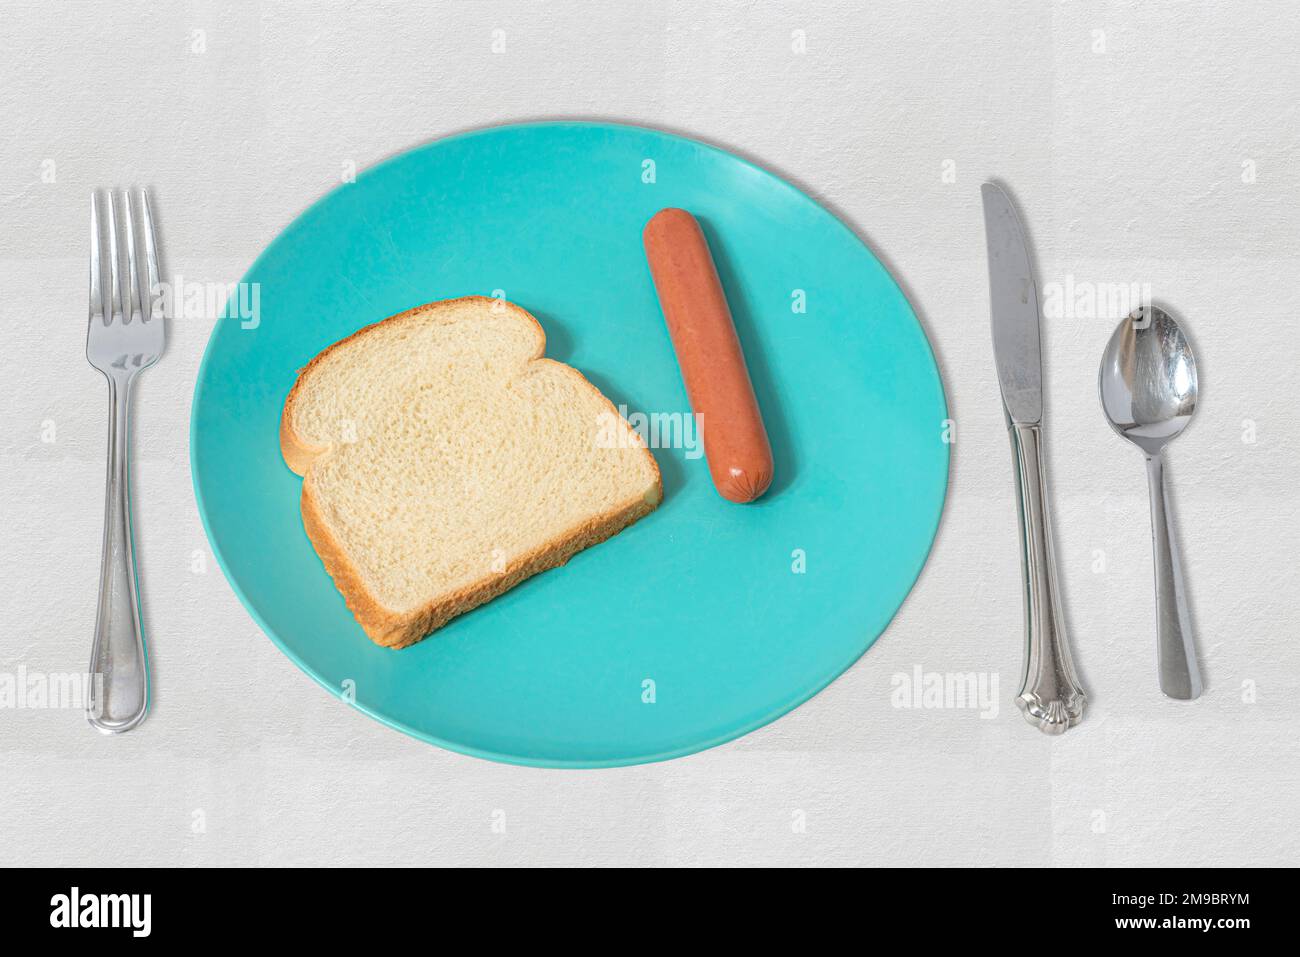 Eine einfache Illustration mit einem Hot Dog und einer Scheibe Brot. Dies veranschaulicht die Auswirkungen hoher Lebensmittelpreise auf die Armen. Stockfoto